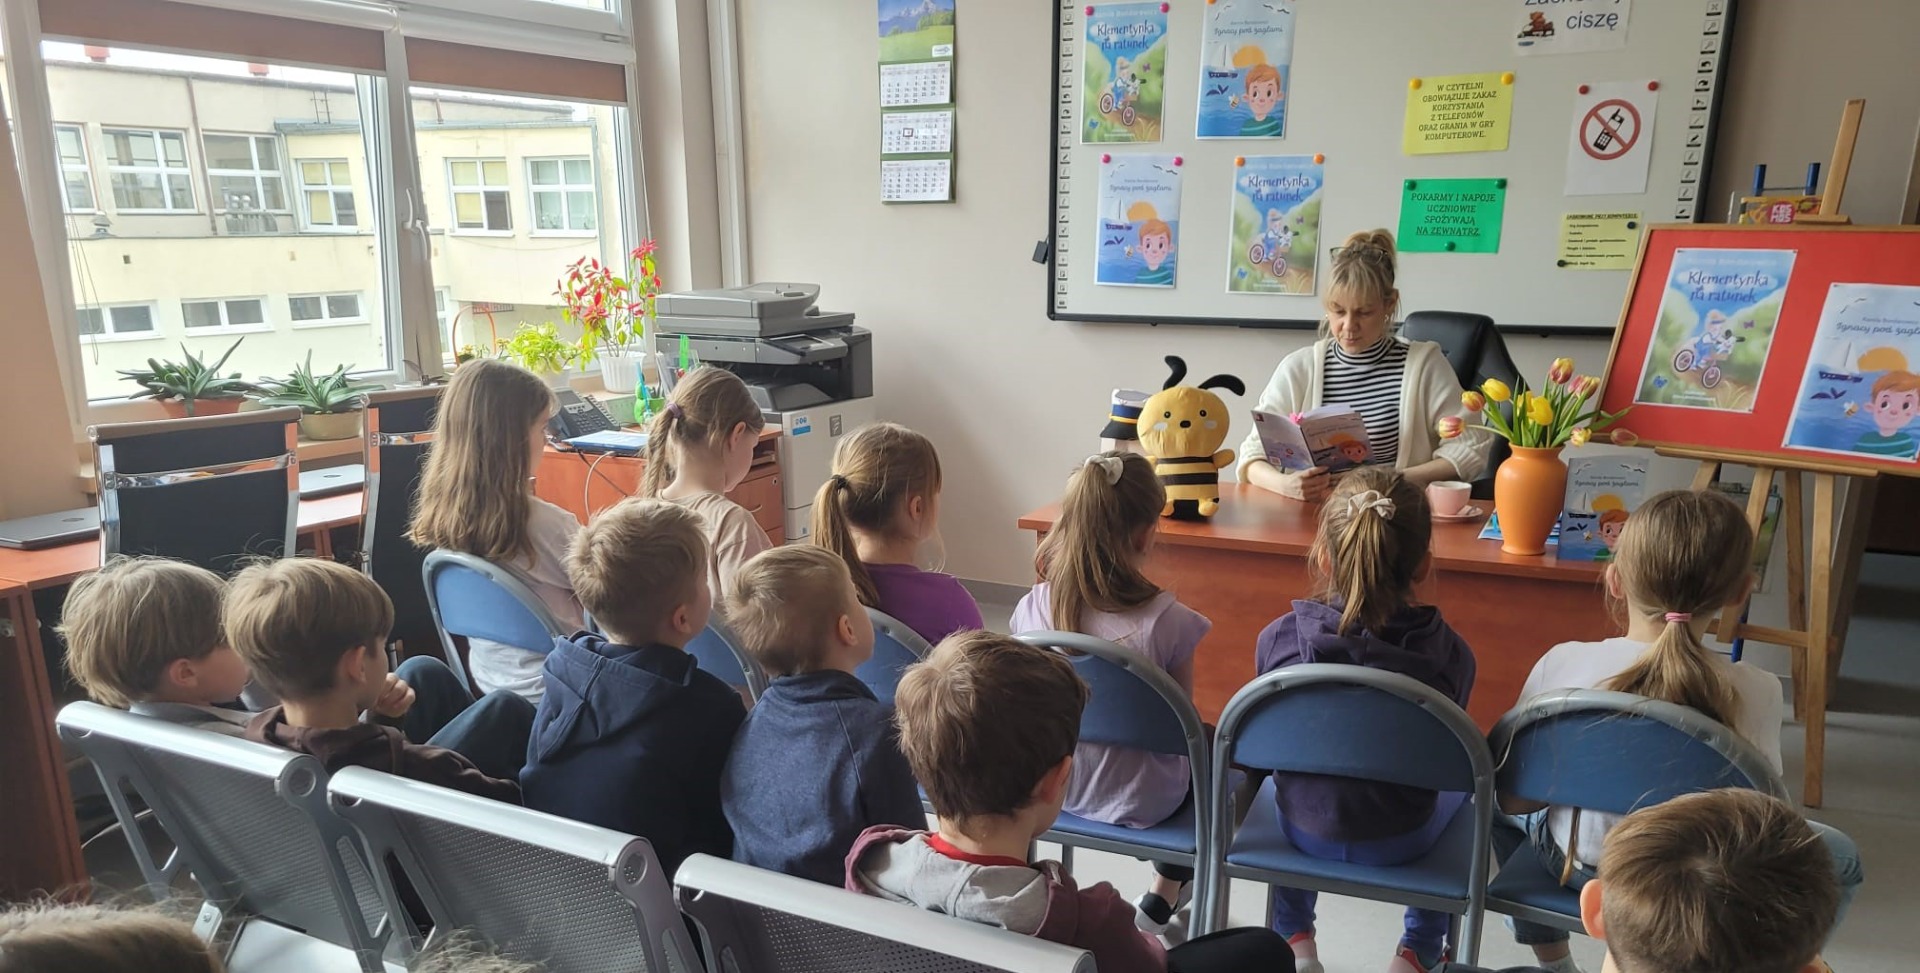 Na zdjęciu widzimy autorkę opowiadań dla dzieci, panią Kamilę Bondarowicz, która czyta uczniom fragmenty swojej książki Ignacy pod żaglami